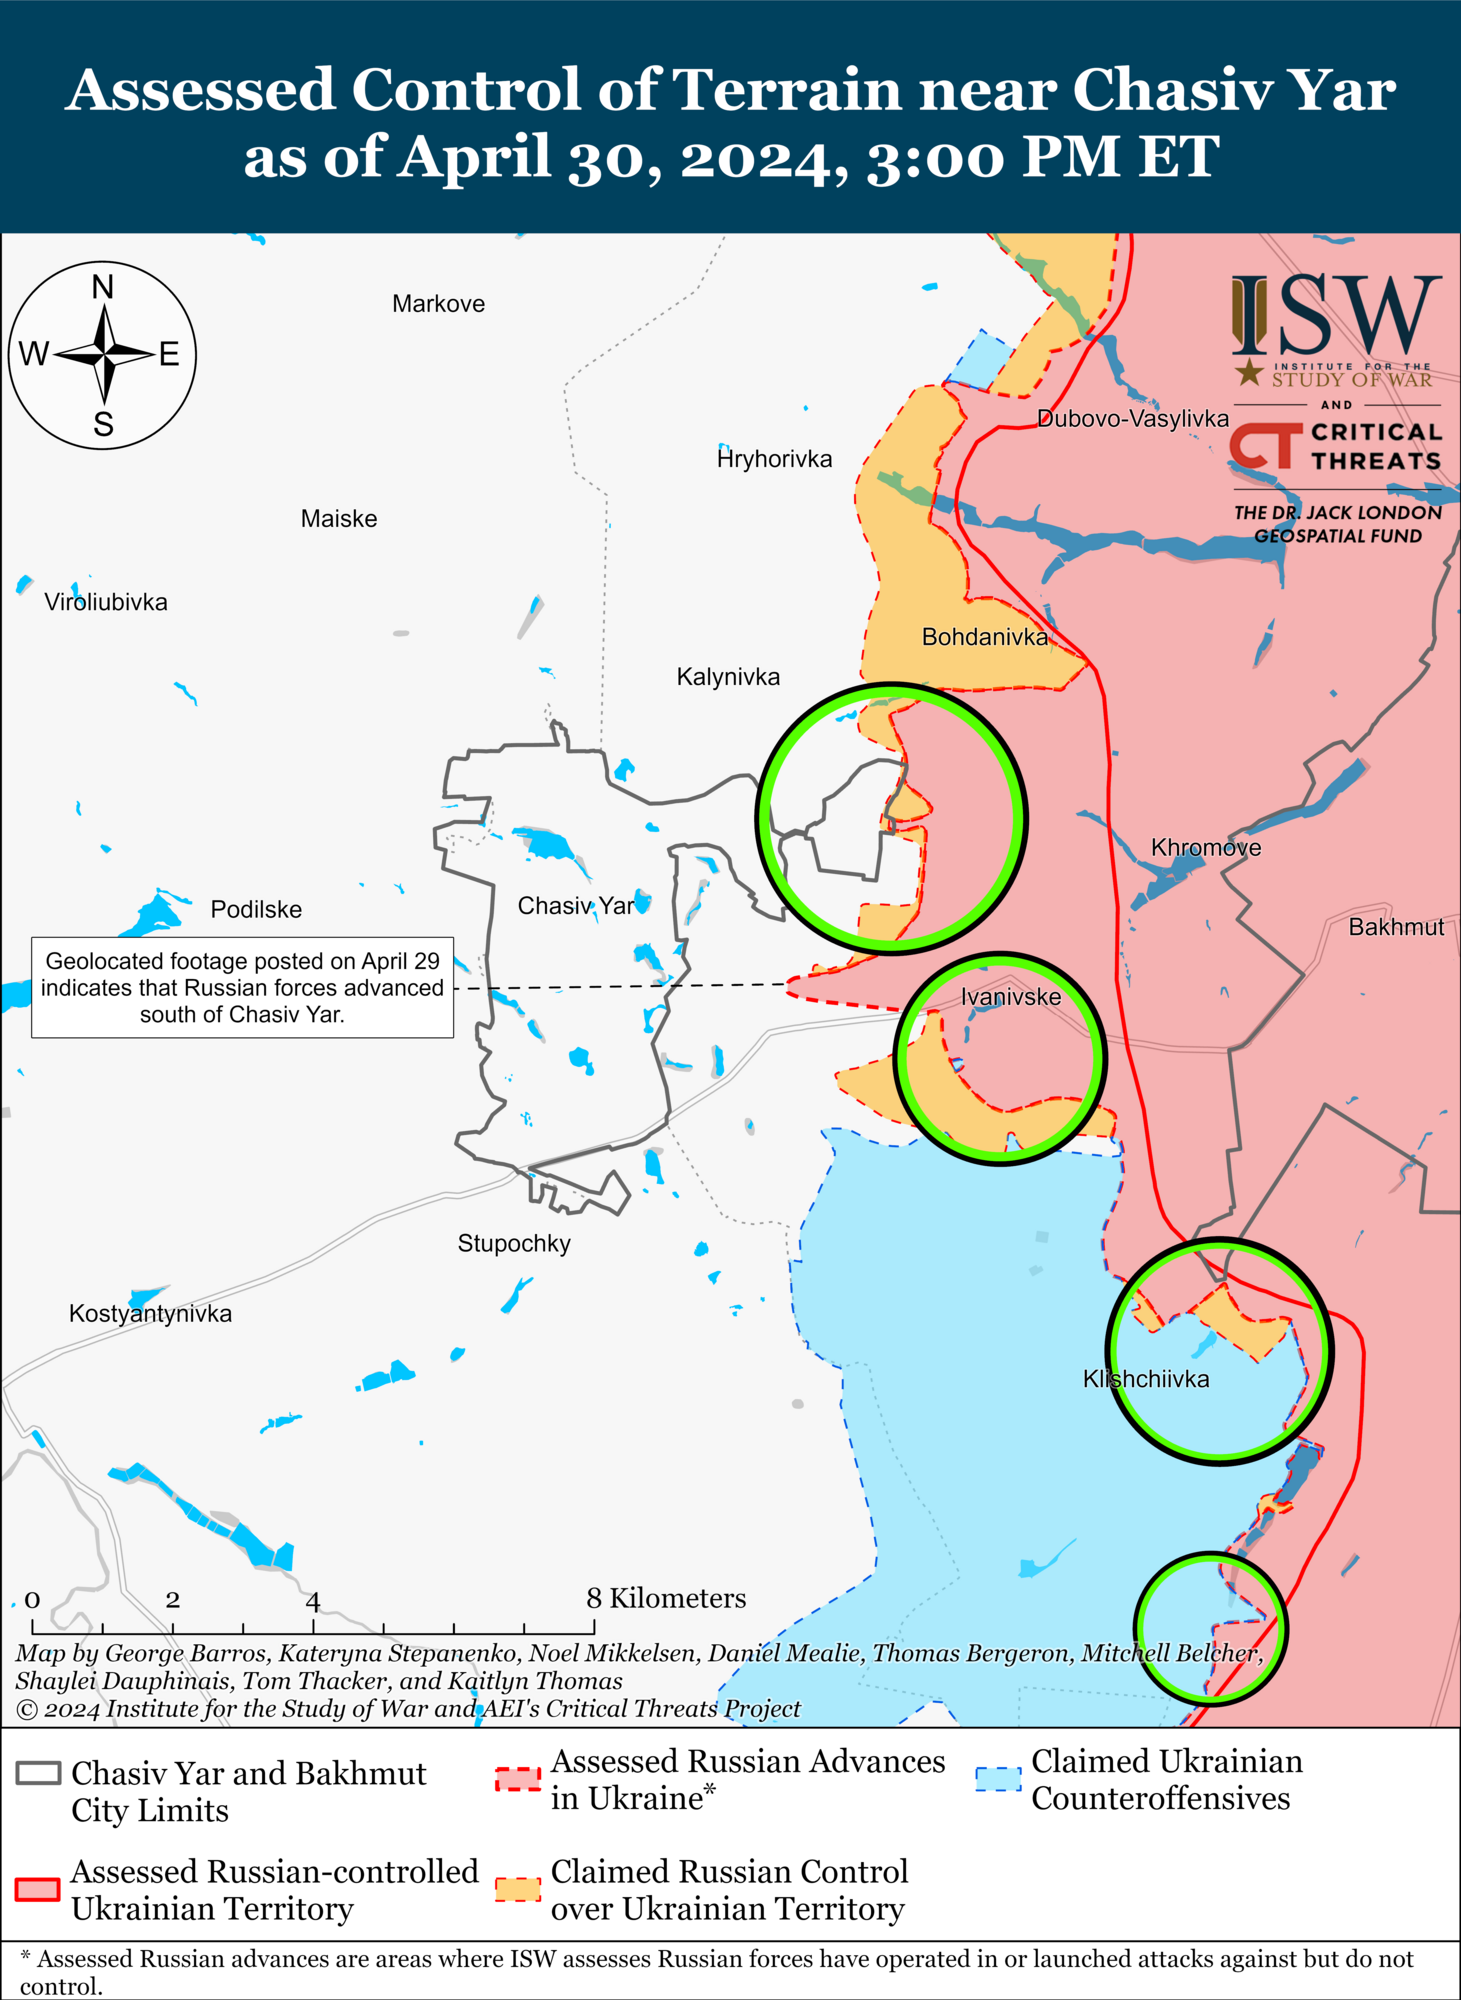 Оккупанты замедлили темп операций под Авдеевкой, но активизировались в районе Часова Яра: в ISW оценили ситуацию. Карта